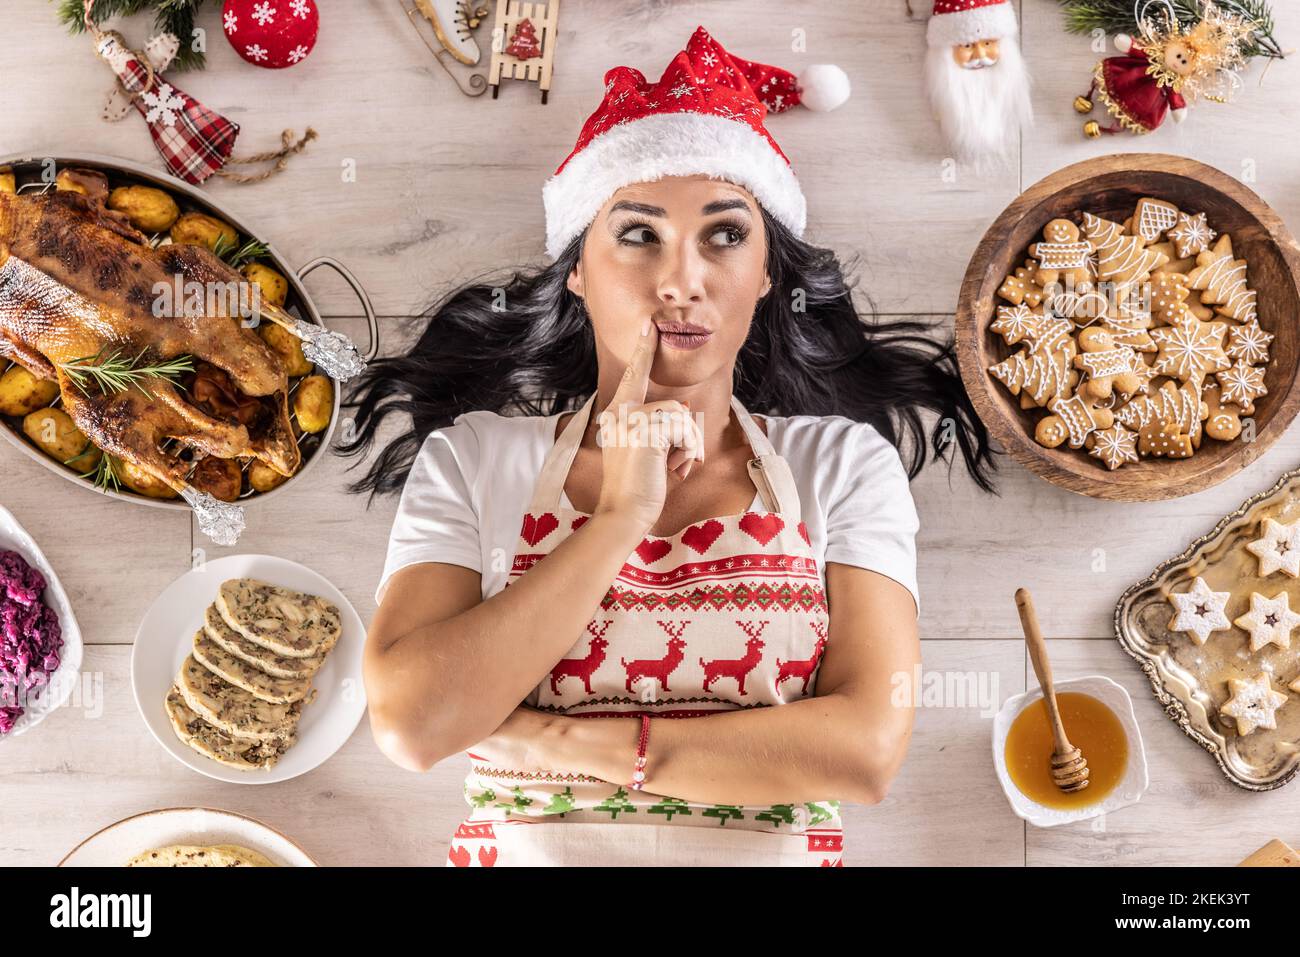 Nachdenkliche Köchin in Weihnachtsschürze und Weihnachtsmütze, auf dem Boden liegend, umgeben von Lebkuchen, Linzer Kuchen, auf der anderen Seite: Gebratene Gans oder tu Stockfoto